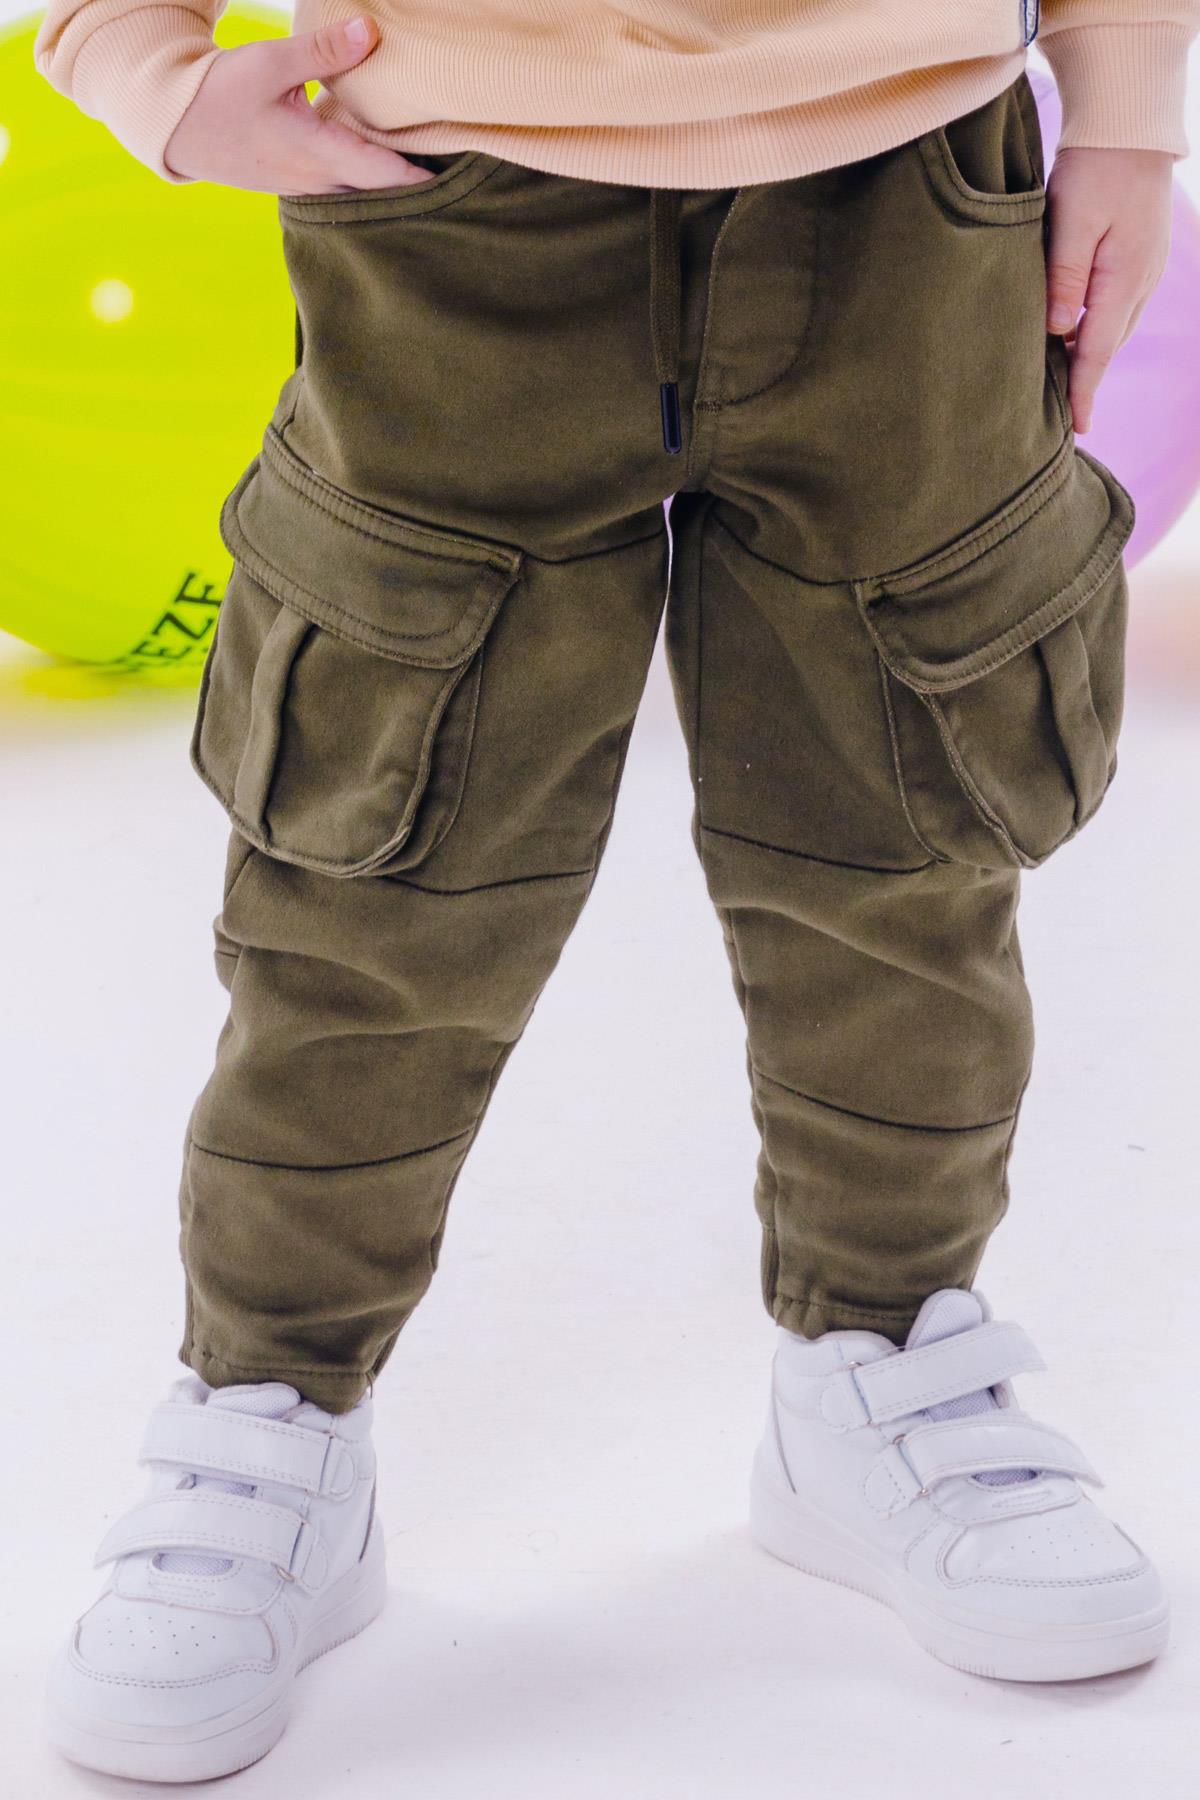 Erkek Çocuk Pantolon Kargo Cepli Beli Lastikli Koyu Haki Yeşil 3-7 Yaş -  Şık Çocuk Pantolonları | Breeze